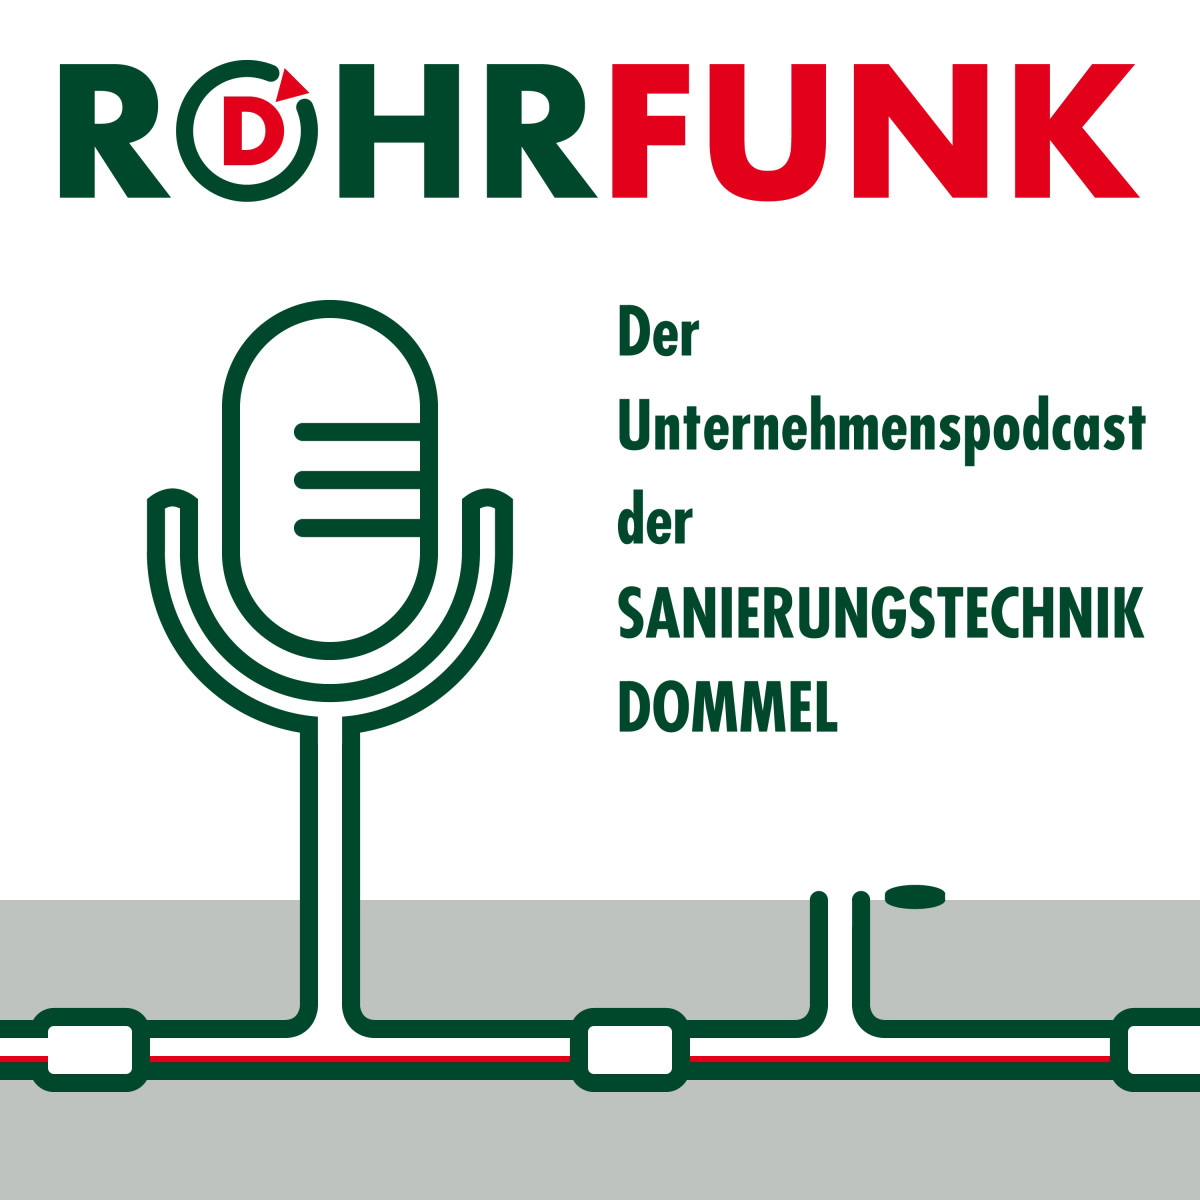 ?Rohrfunk? hei?t der neue Podcast der Sanierungstechnik Dommel GmbH.